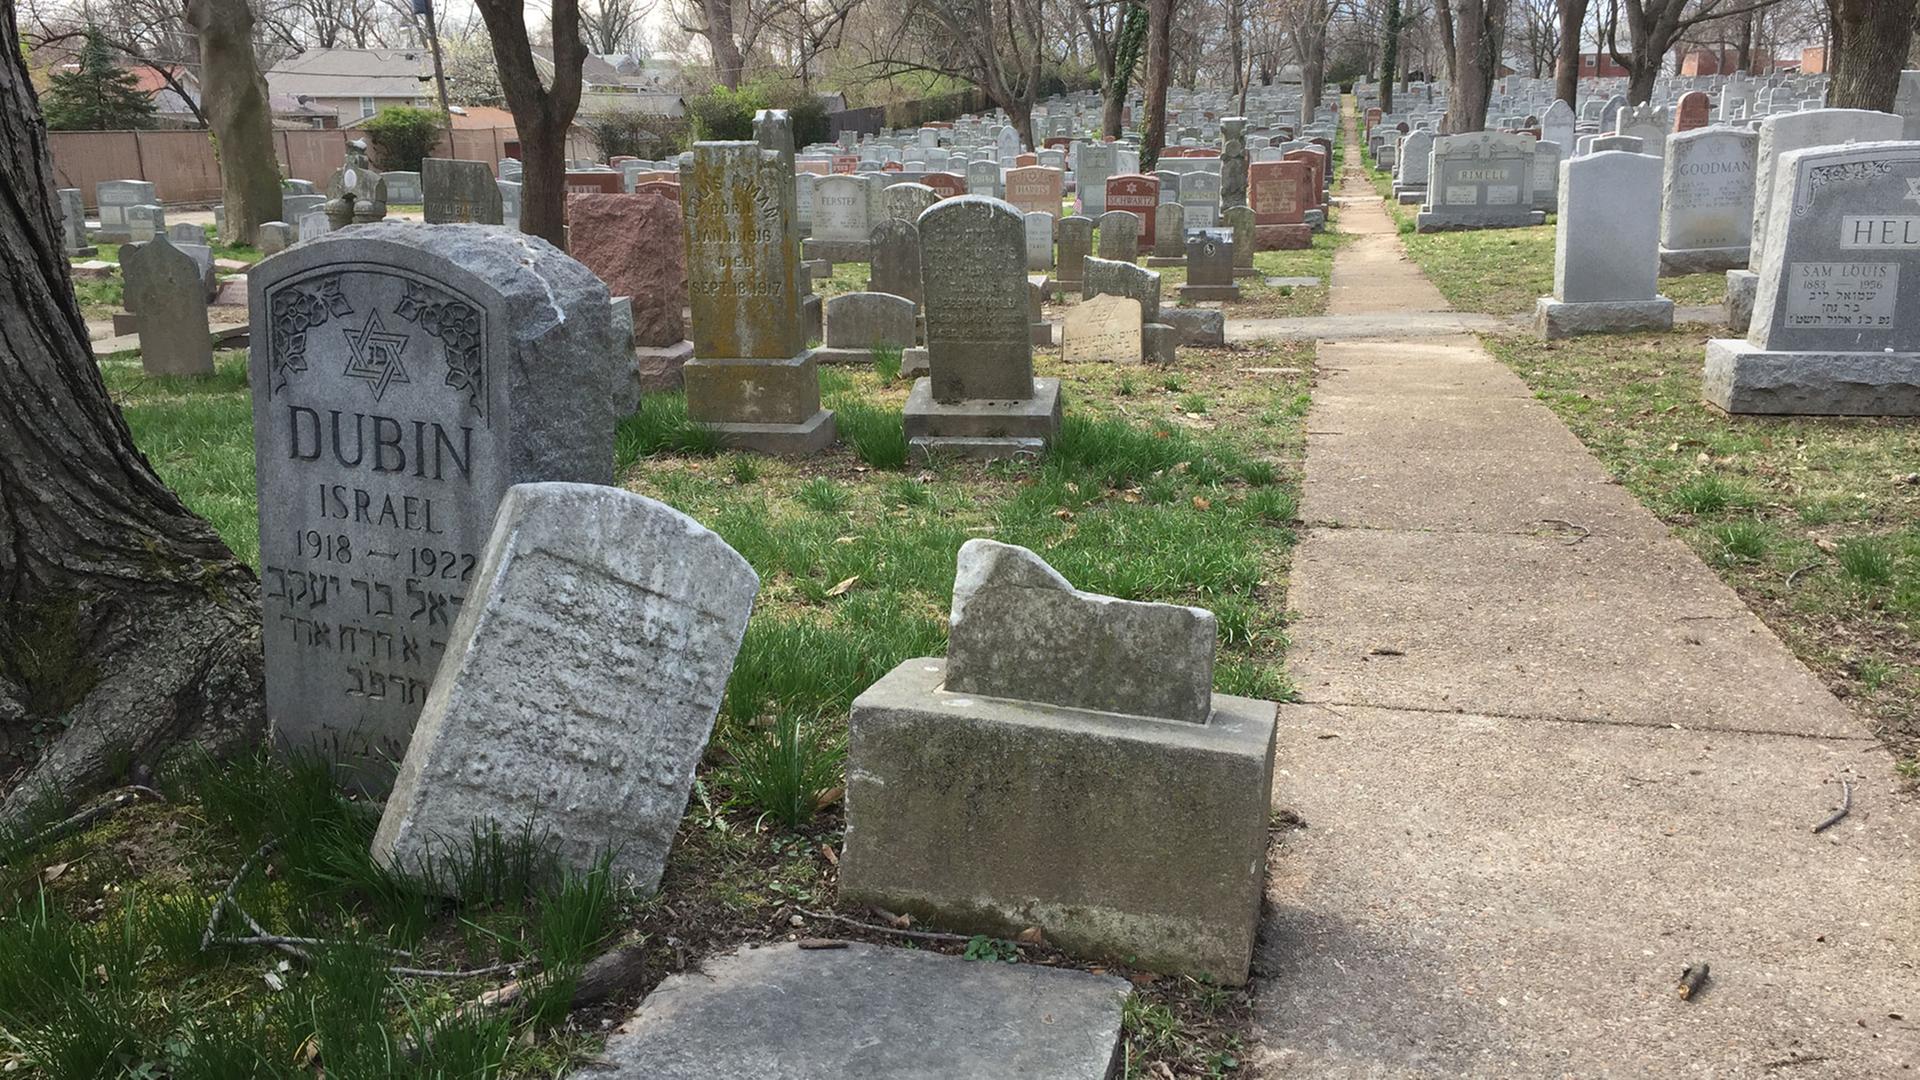 Zerstörungen auf dem jüdischen Friedhof von St. Louis: Erst waren es Worte, dann kamen die Taten